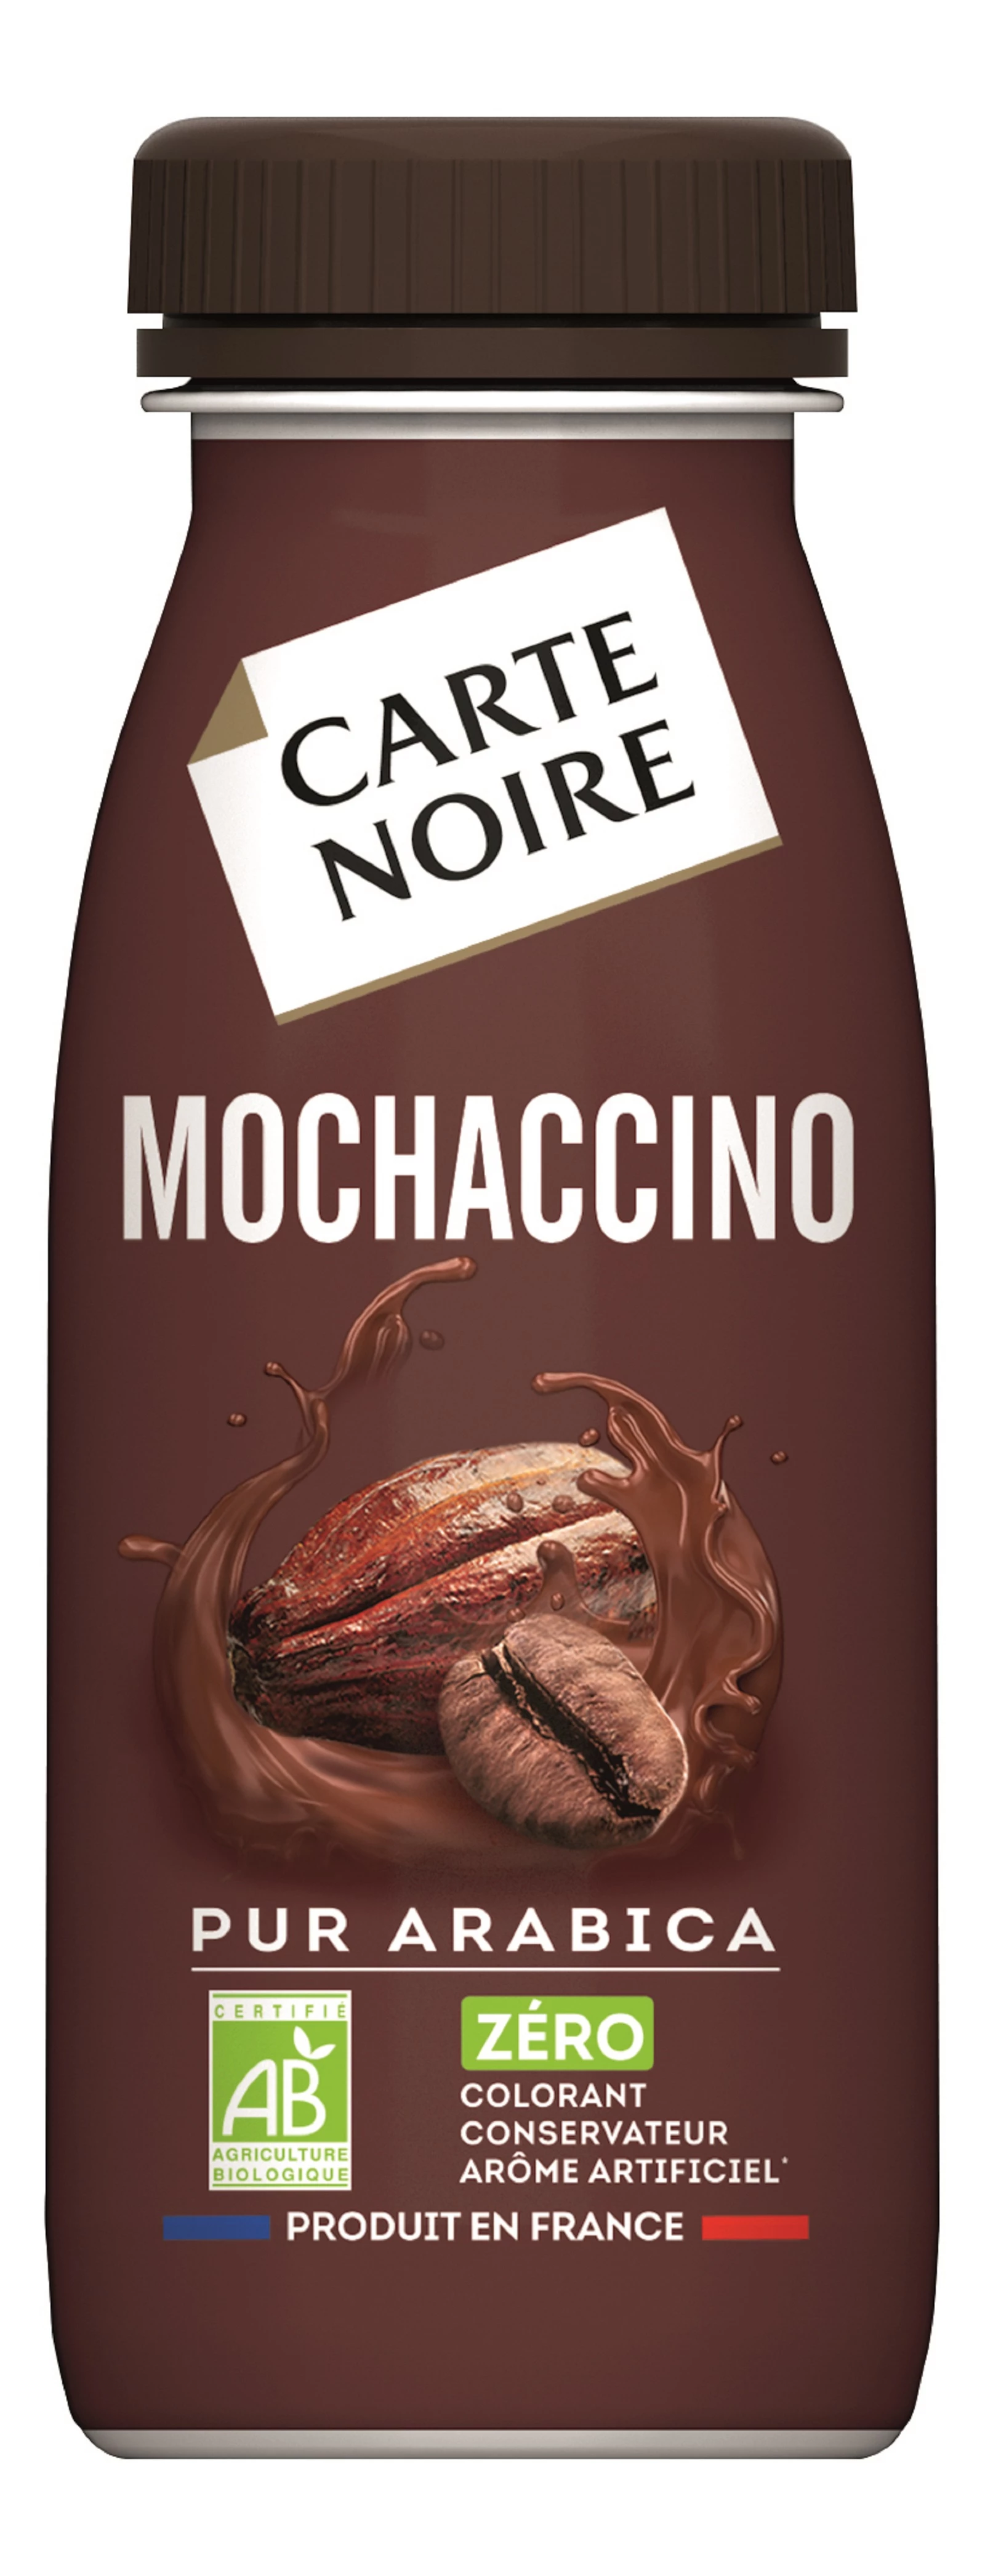 Bevanda al caffè Mochaccino biologico 25cl - CARTE NOIRE